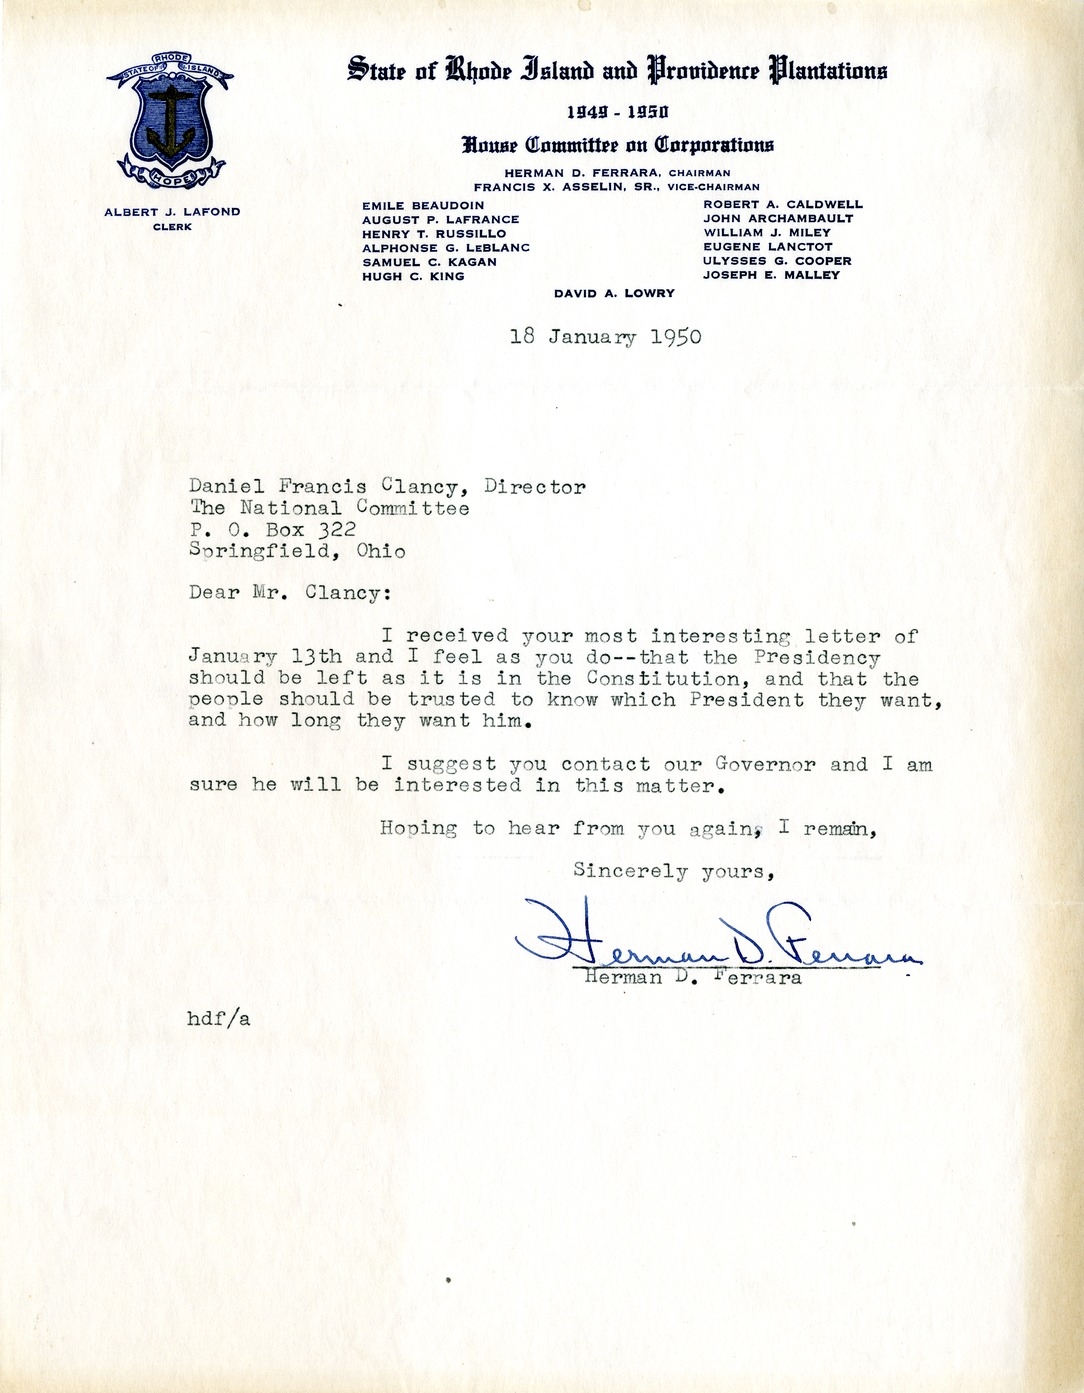 Letter from Herman D. Ferrara to Daniel F. Clancy